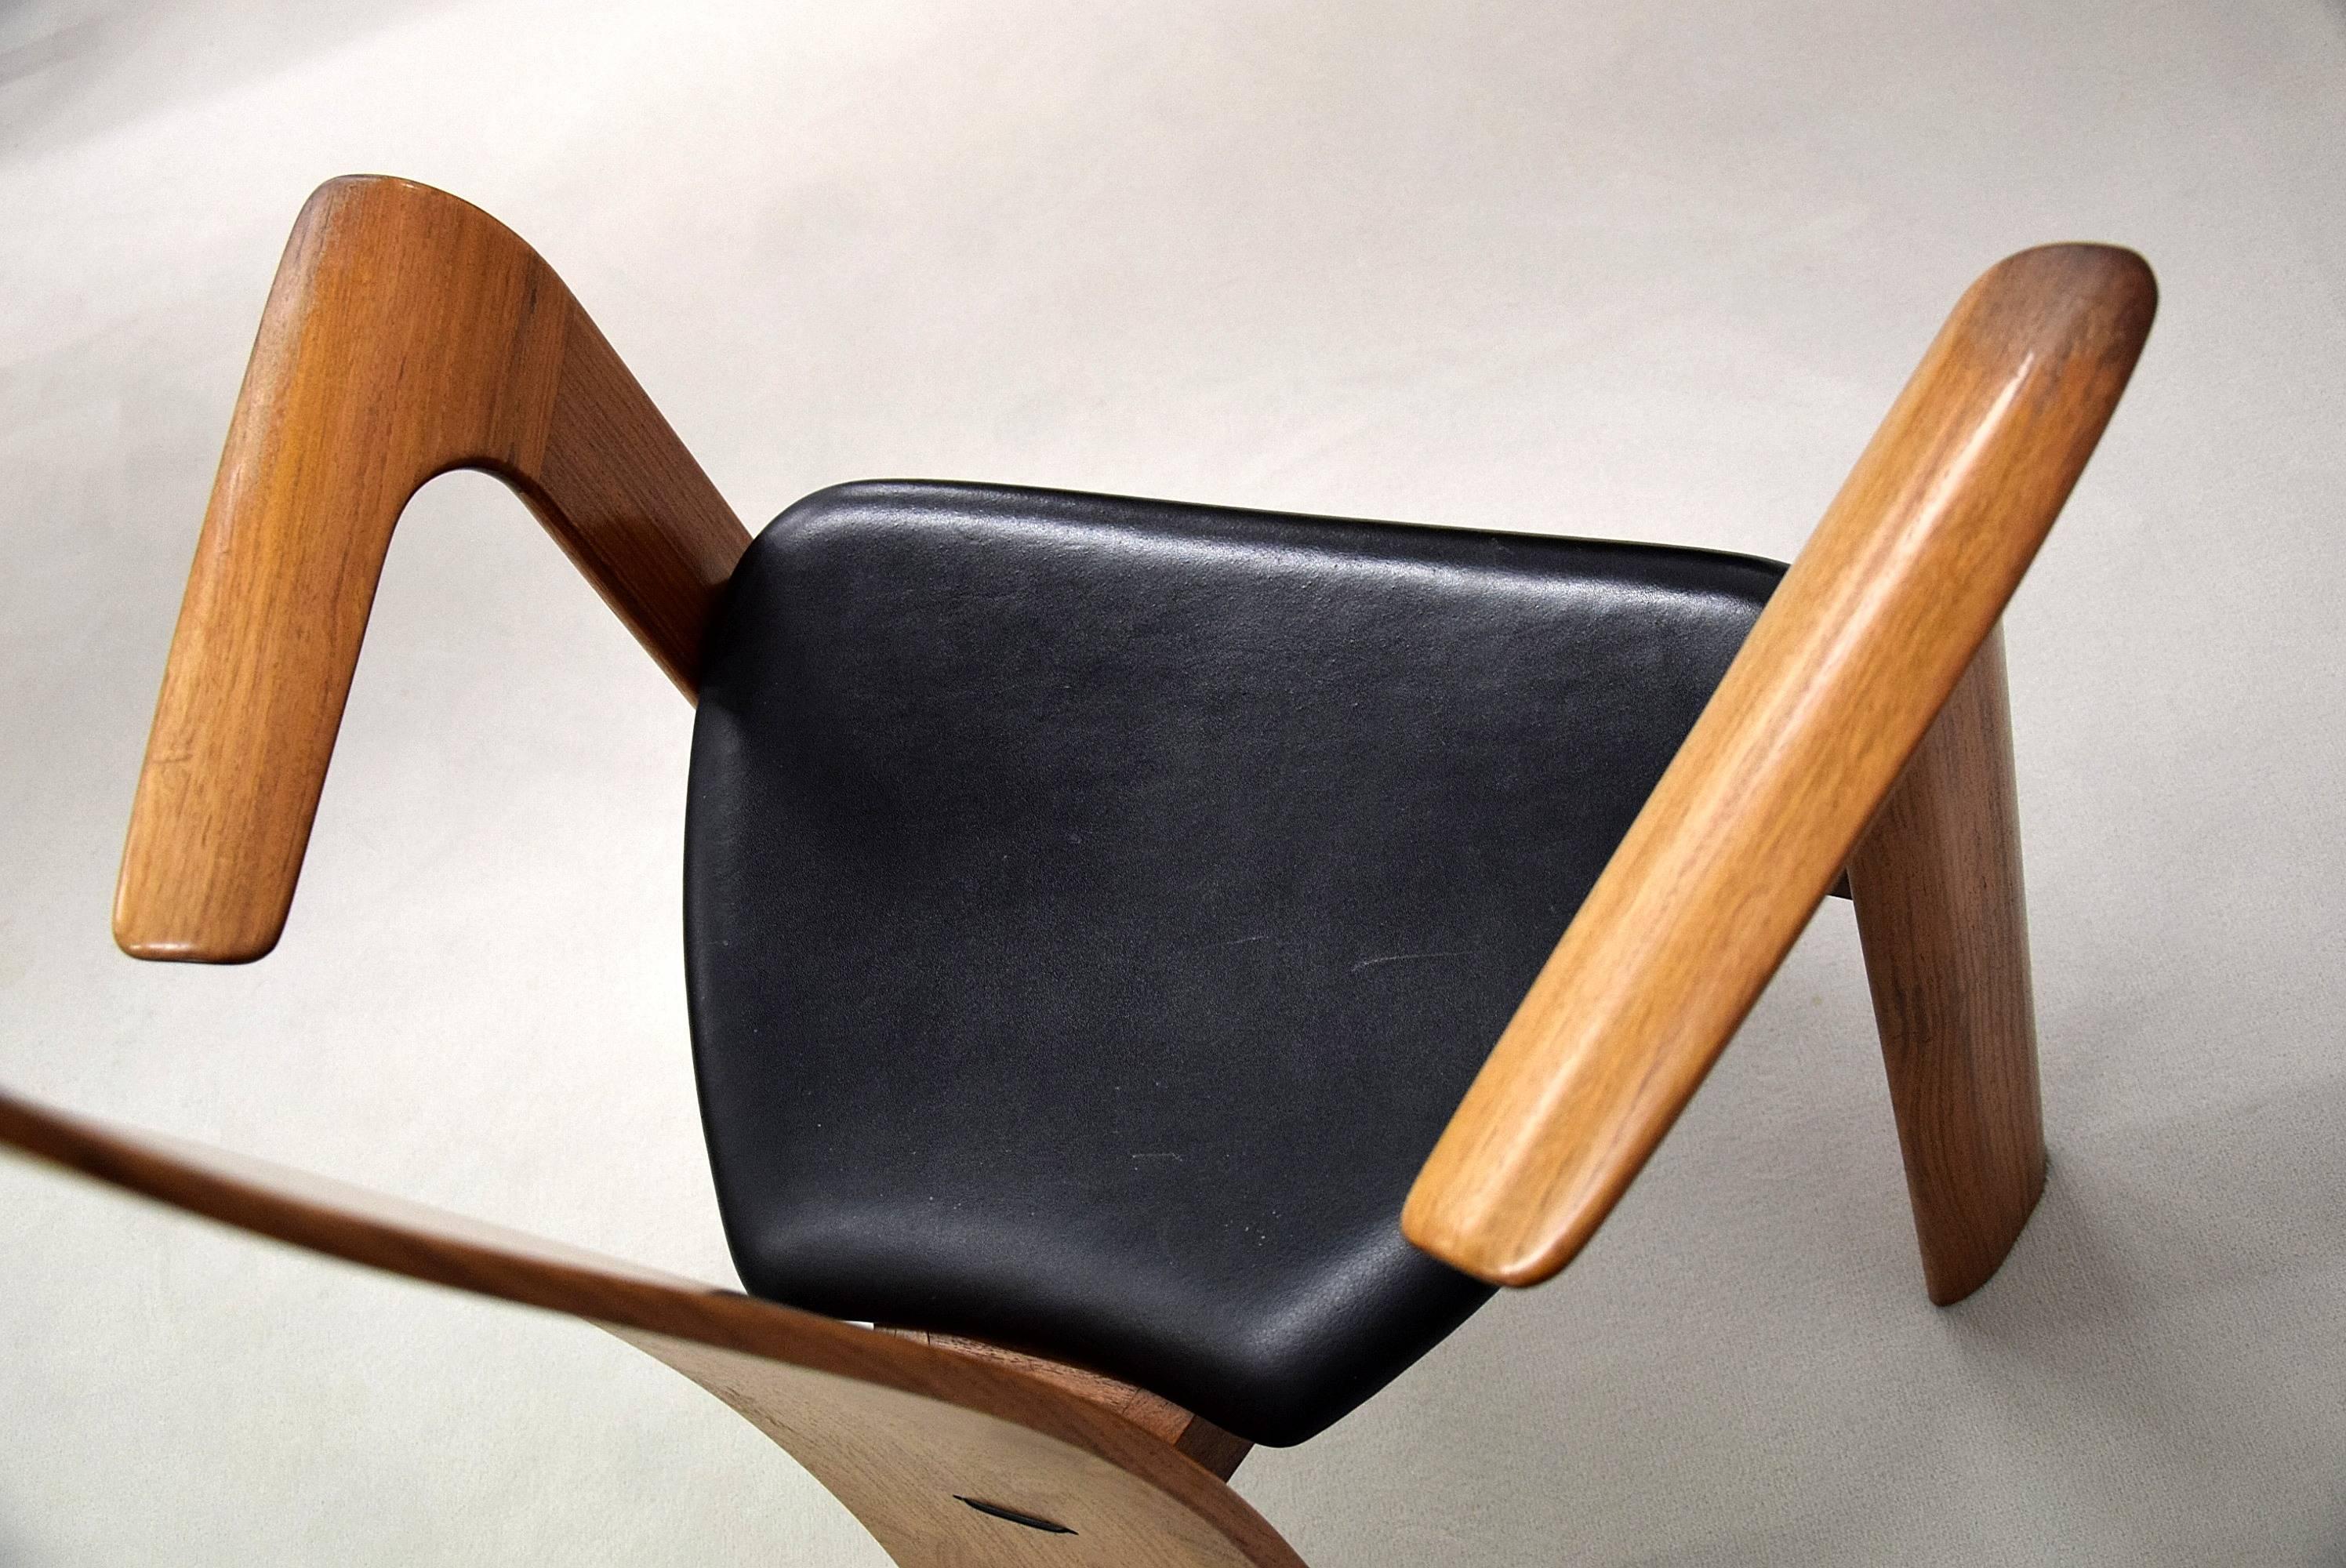 Eleganter und stilvoller Stuhl aus Afromosia (afrikanisches Teakholz) und Leder aus der Mitte des Jahrhunderts, entworfen von Bob und Dries van den Bergh für Tranekær Mobler, Dänemark.

Dieses spektakuläre Design ist ein Schmuckstück in jeder